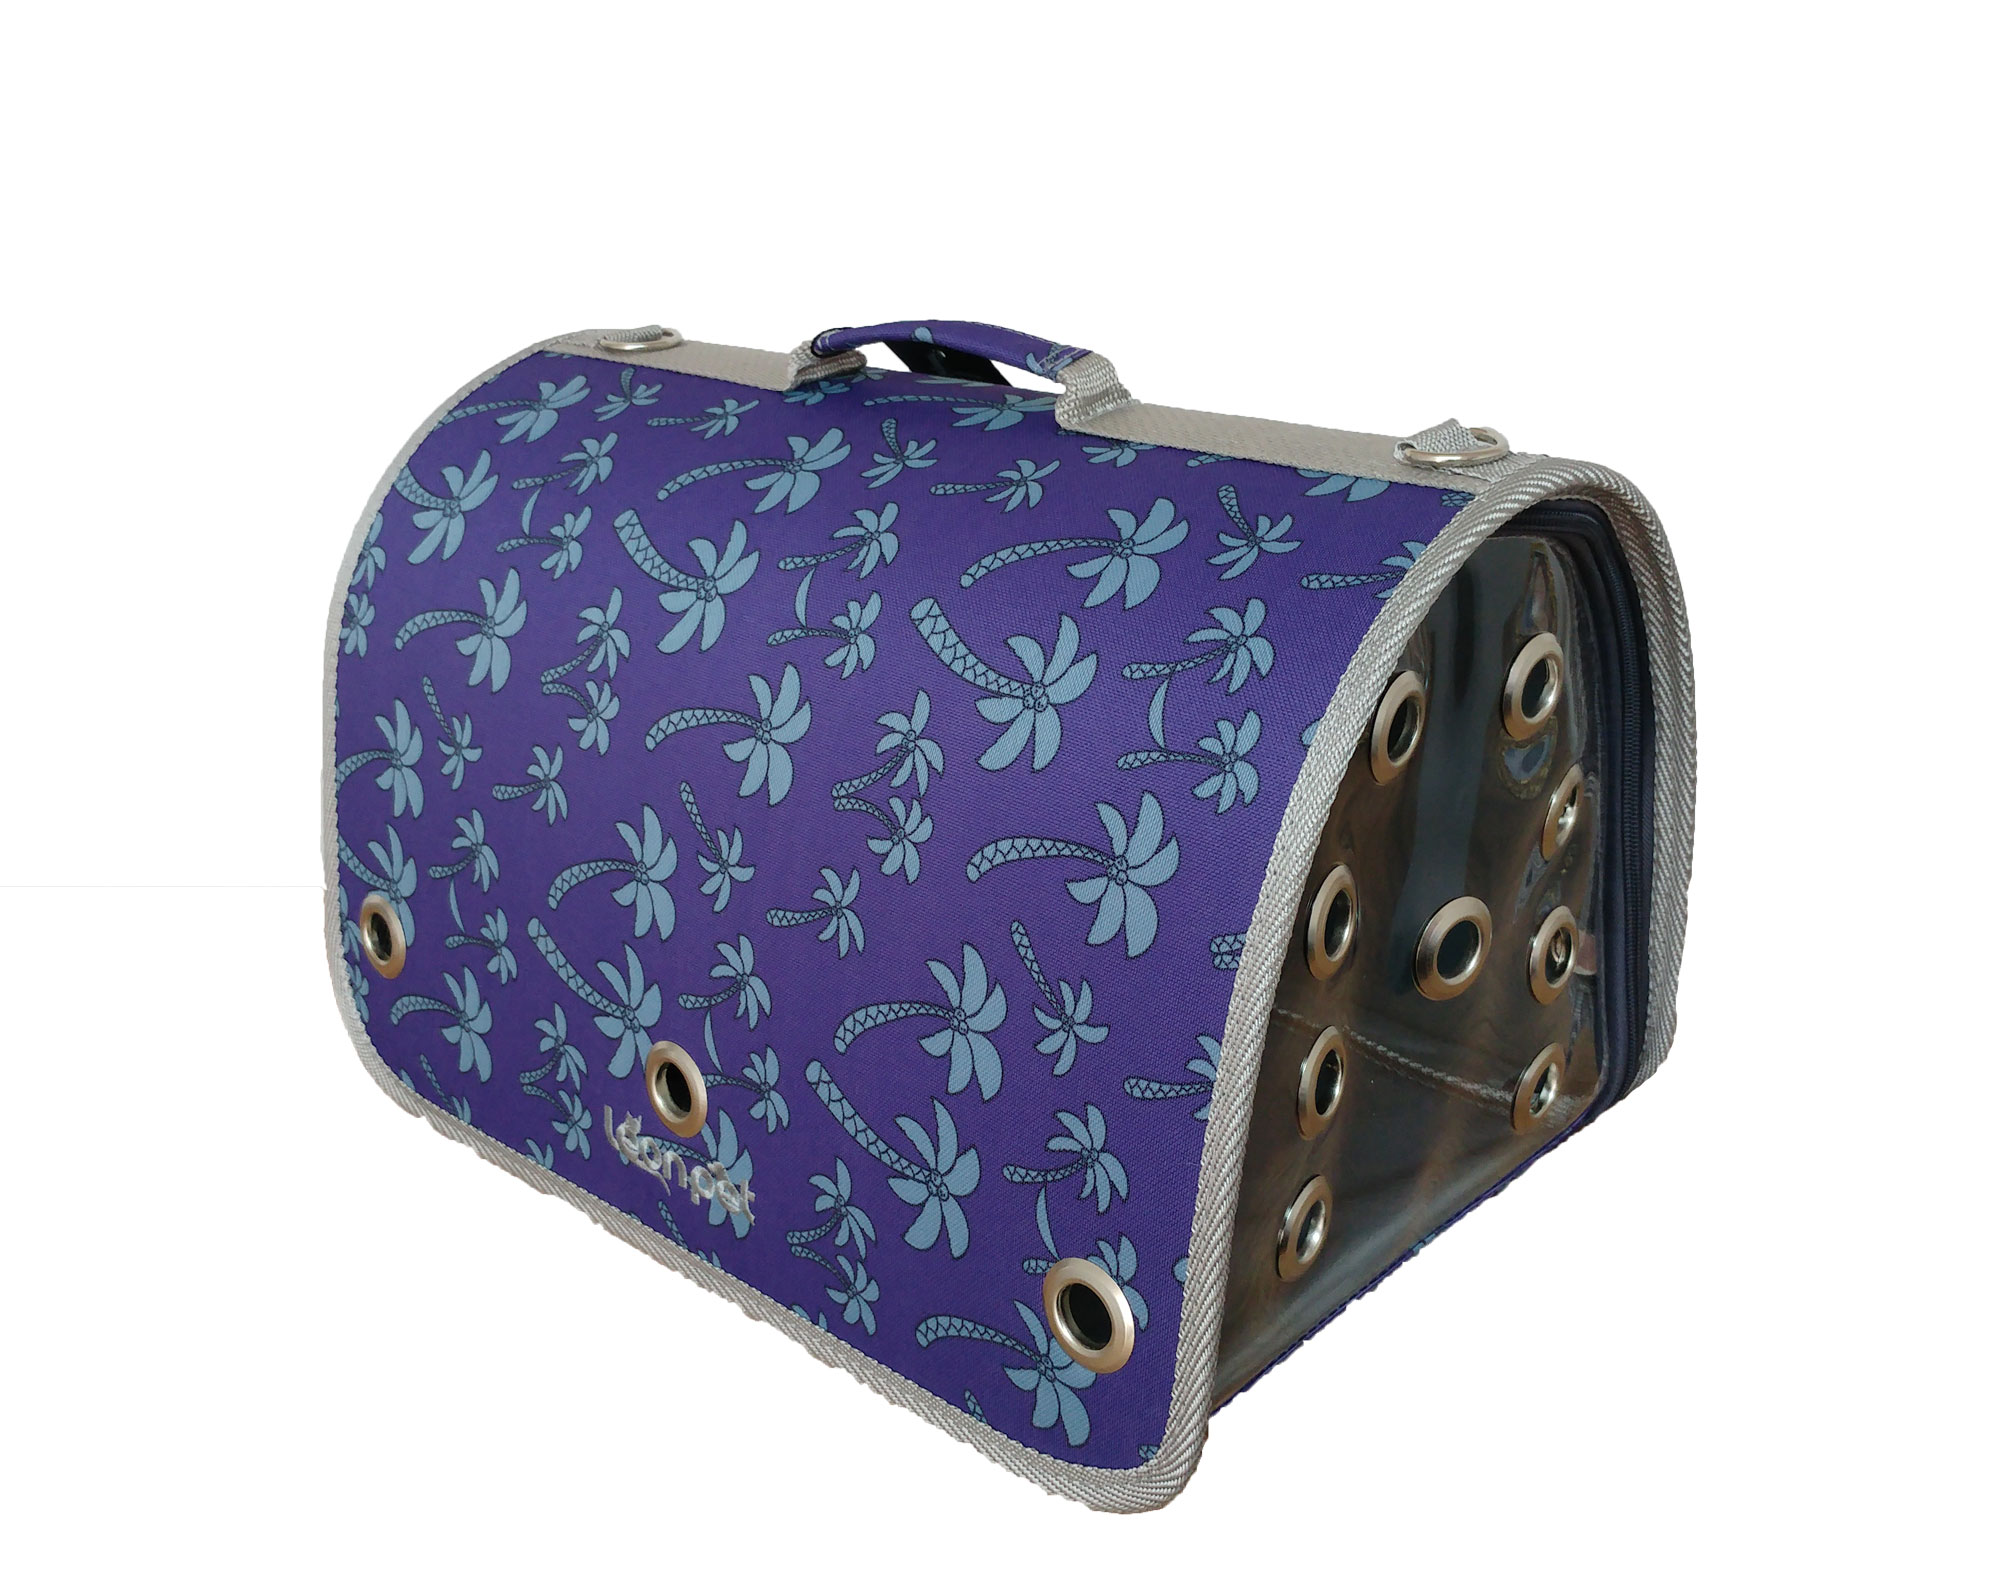 Leonpet Köpek ve Kedi Fly Bag Taşıma Çantası Mavi Palmiye Desenli 25x40x25 Cm